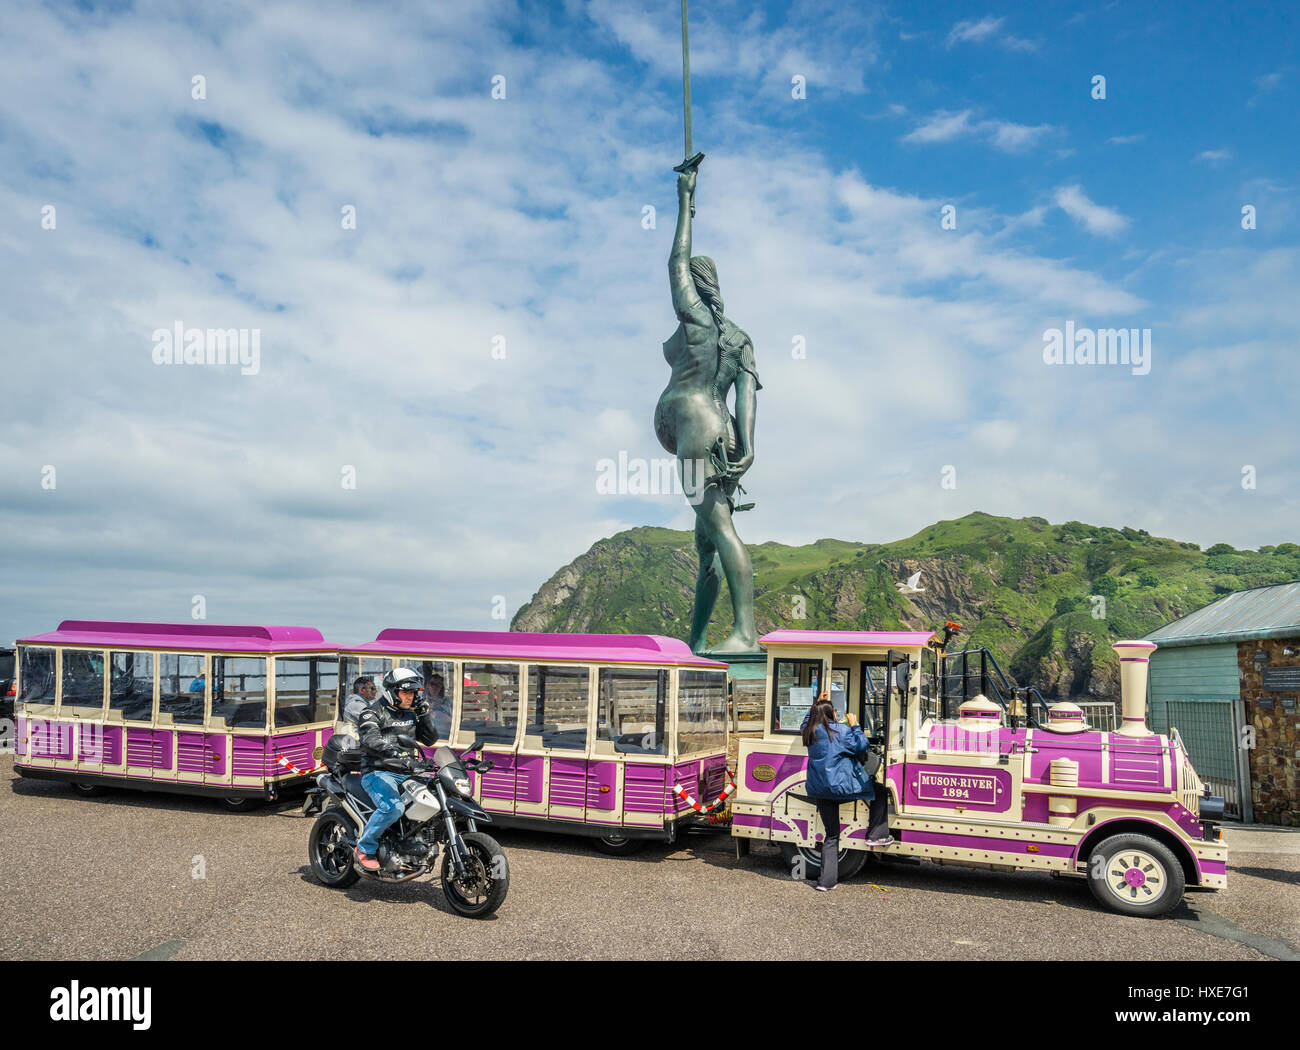 Regno Unito, Sud Ovest Inghilterra, North Devon, Ilfracombe Harbour, bronce statua "Verity' di Damien Hirst, il misuratore 20.25 monumento è un allegoria f Foto Stock